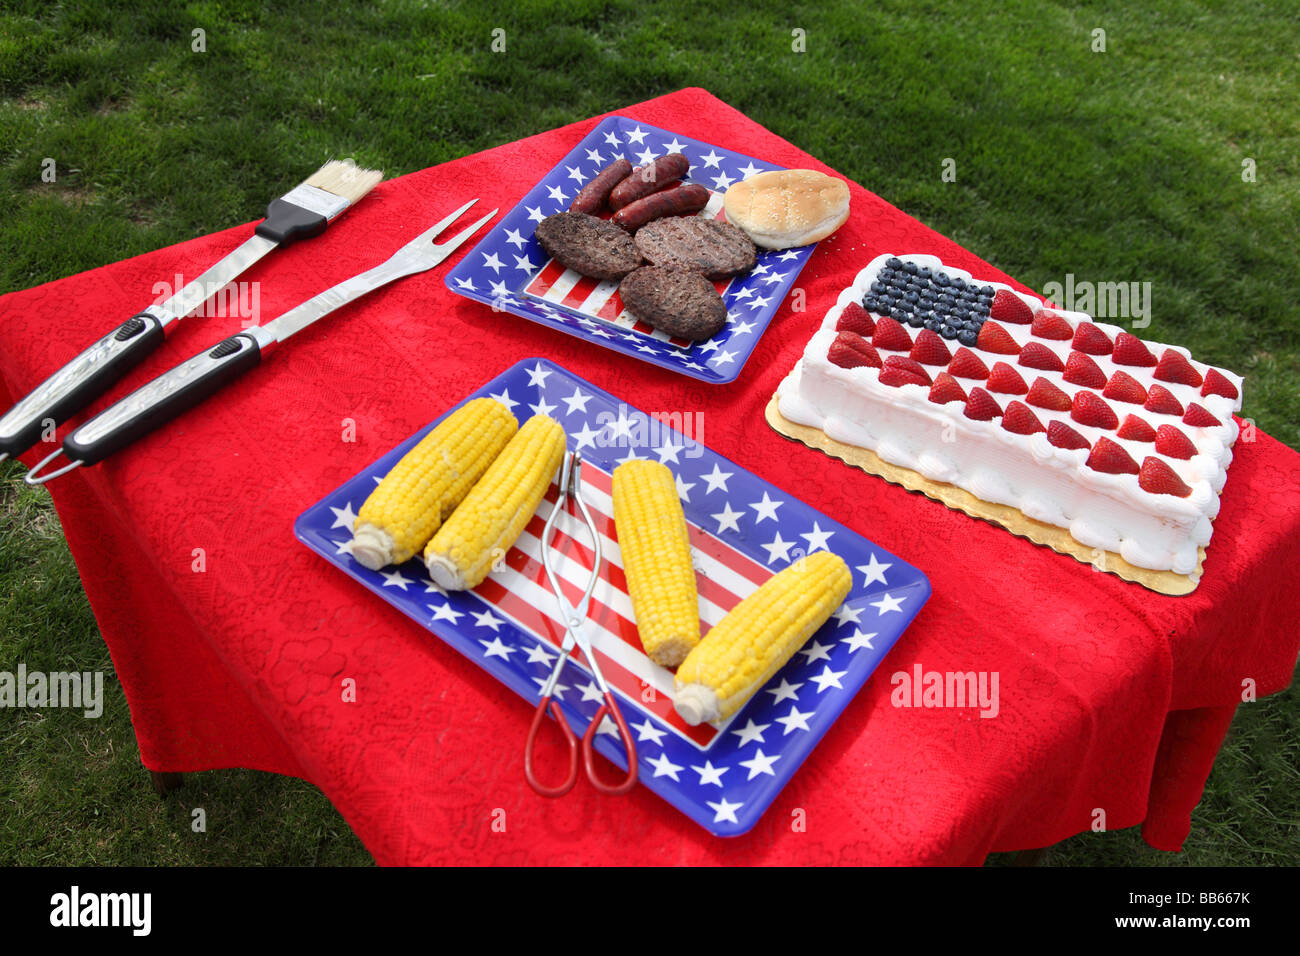 Table des aliments préparés pour barbecue du 4 juillet Banque D'Images